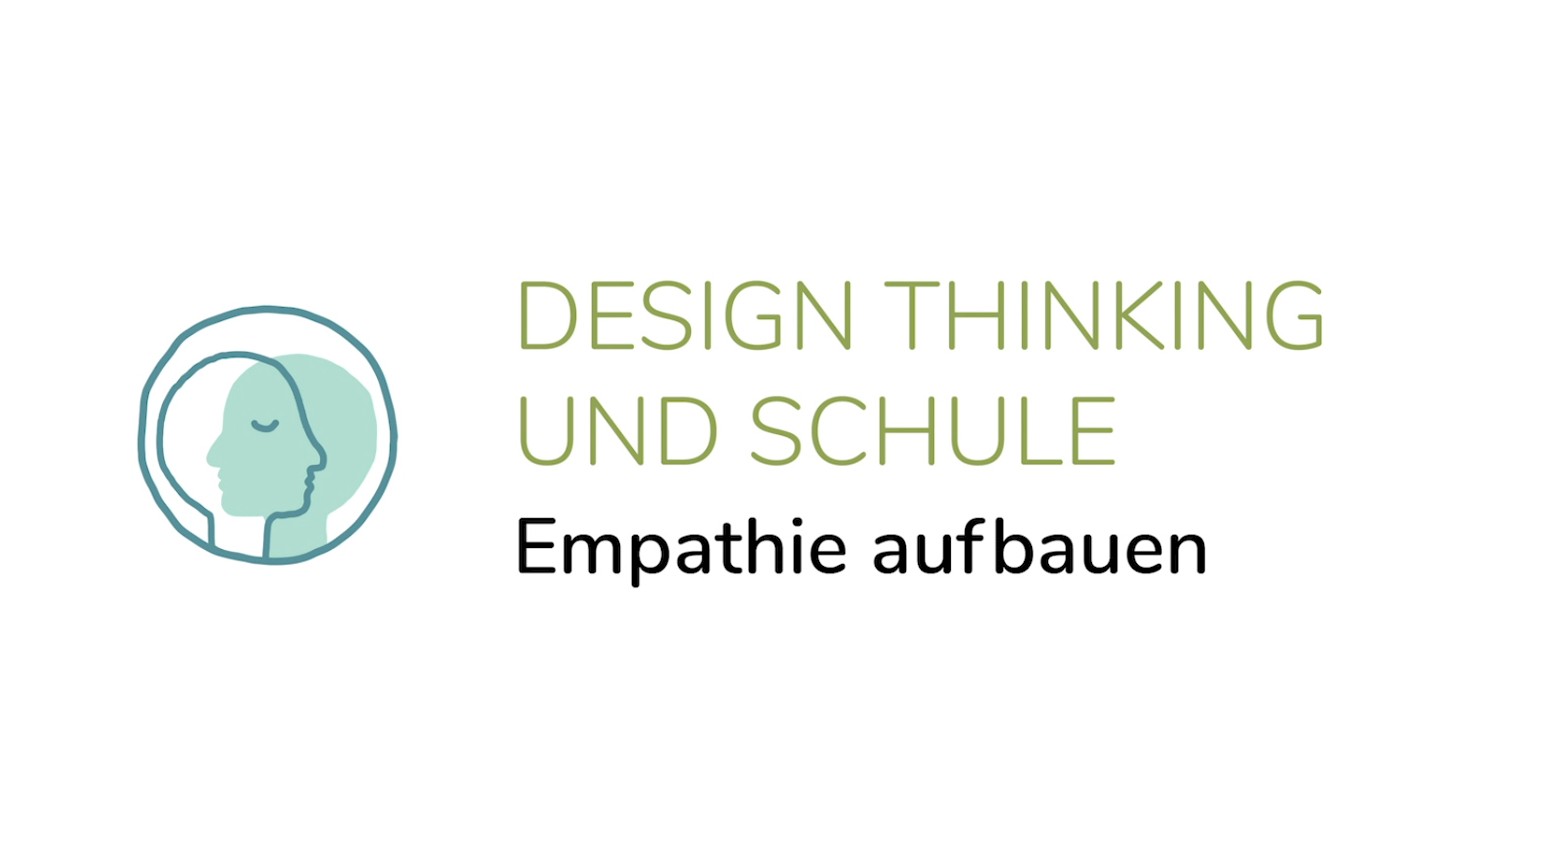 Design Thinking und Schule - Emphatie aufbauen (2. Phase)